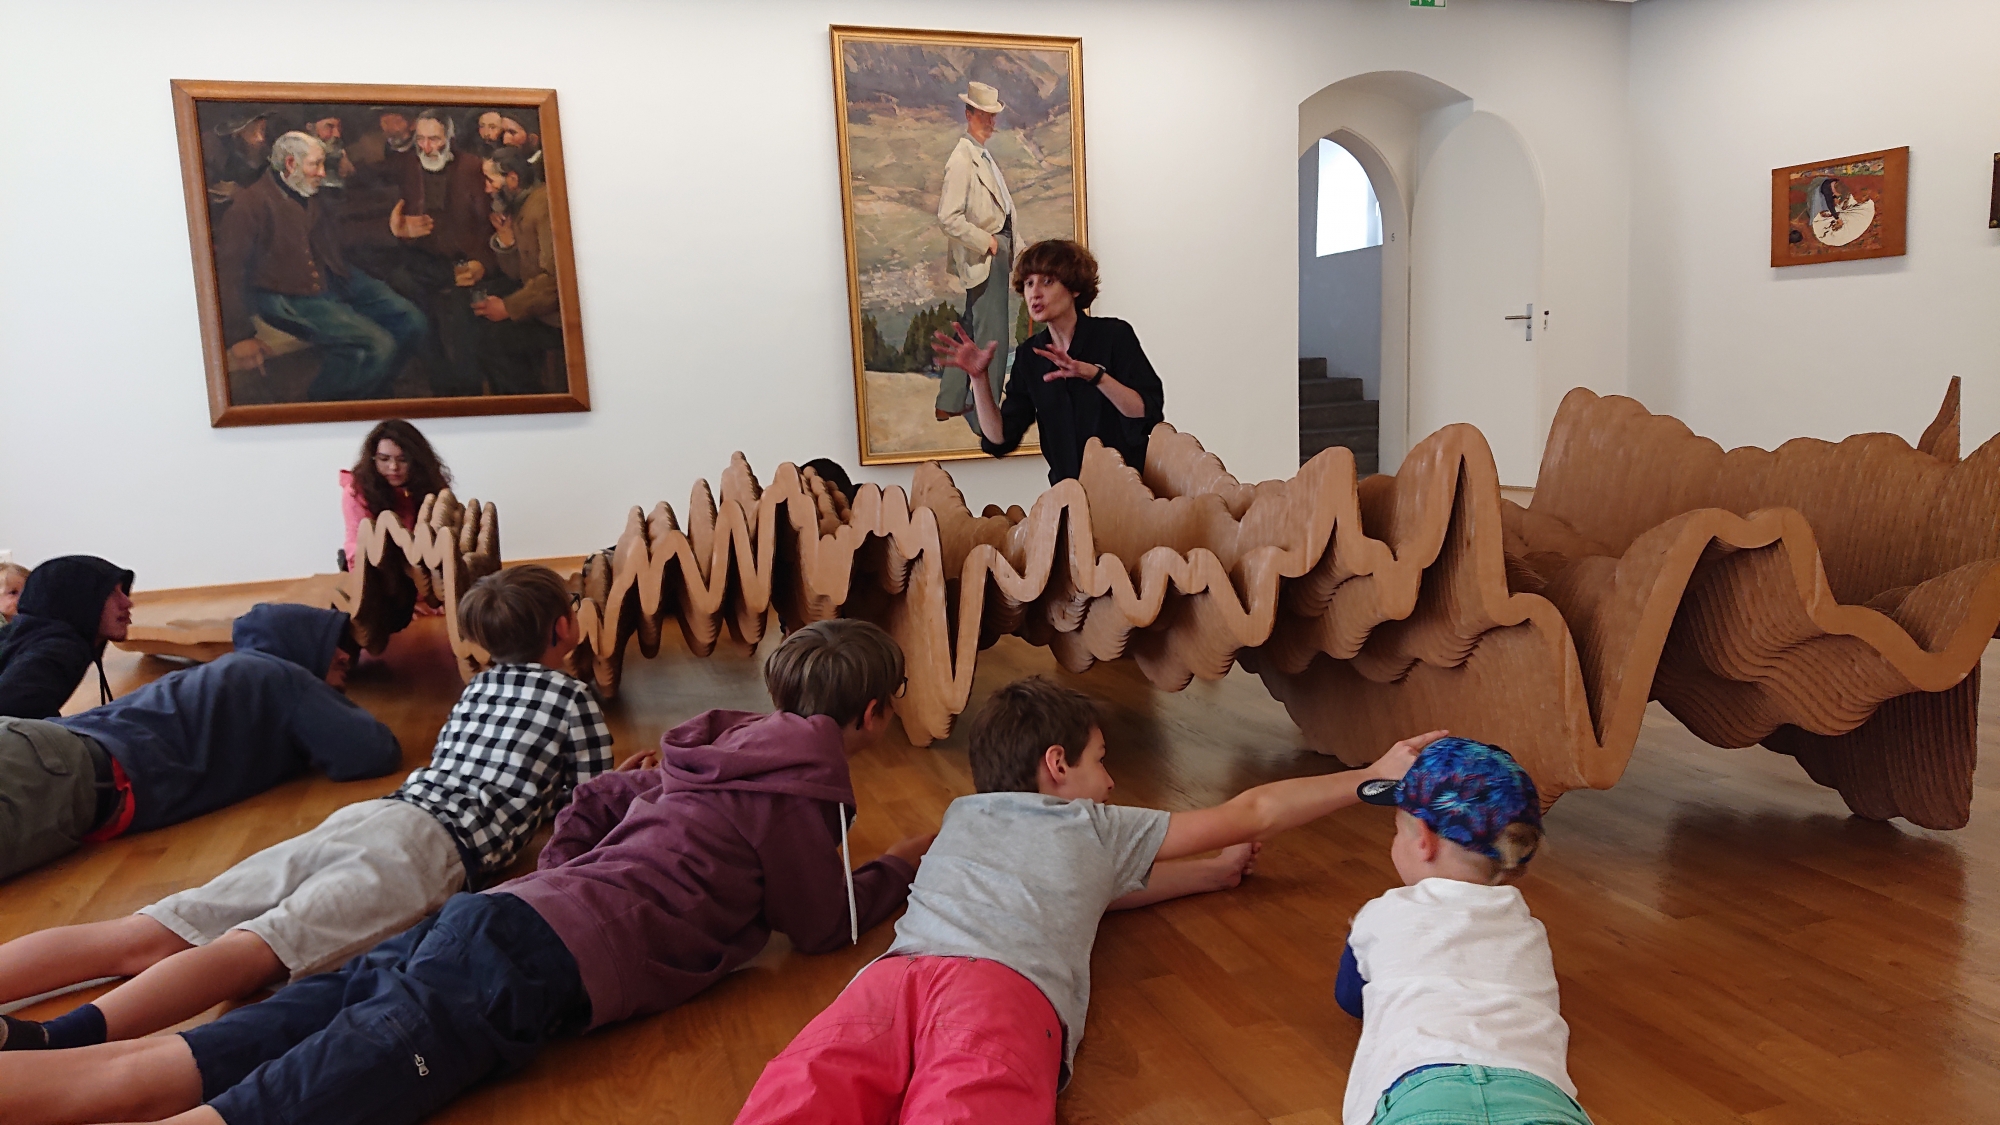 Les trois musées - ici le Musée d'art - proposent des activités spécialement destinées aux enfants pendant les vacances.